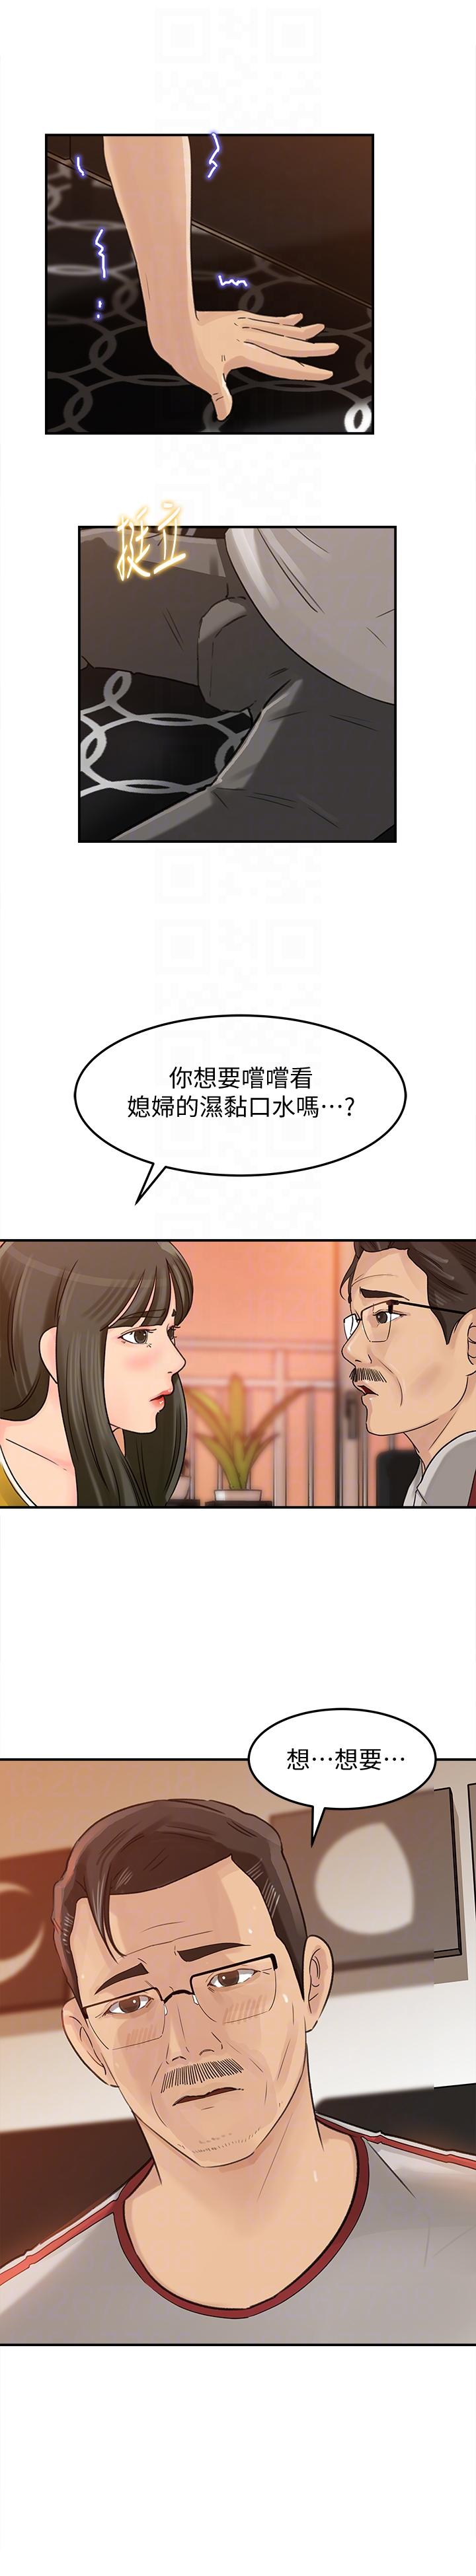 《媳妇的诱惑》漫画 第16话-不要停~!